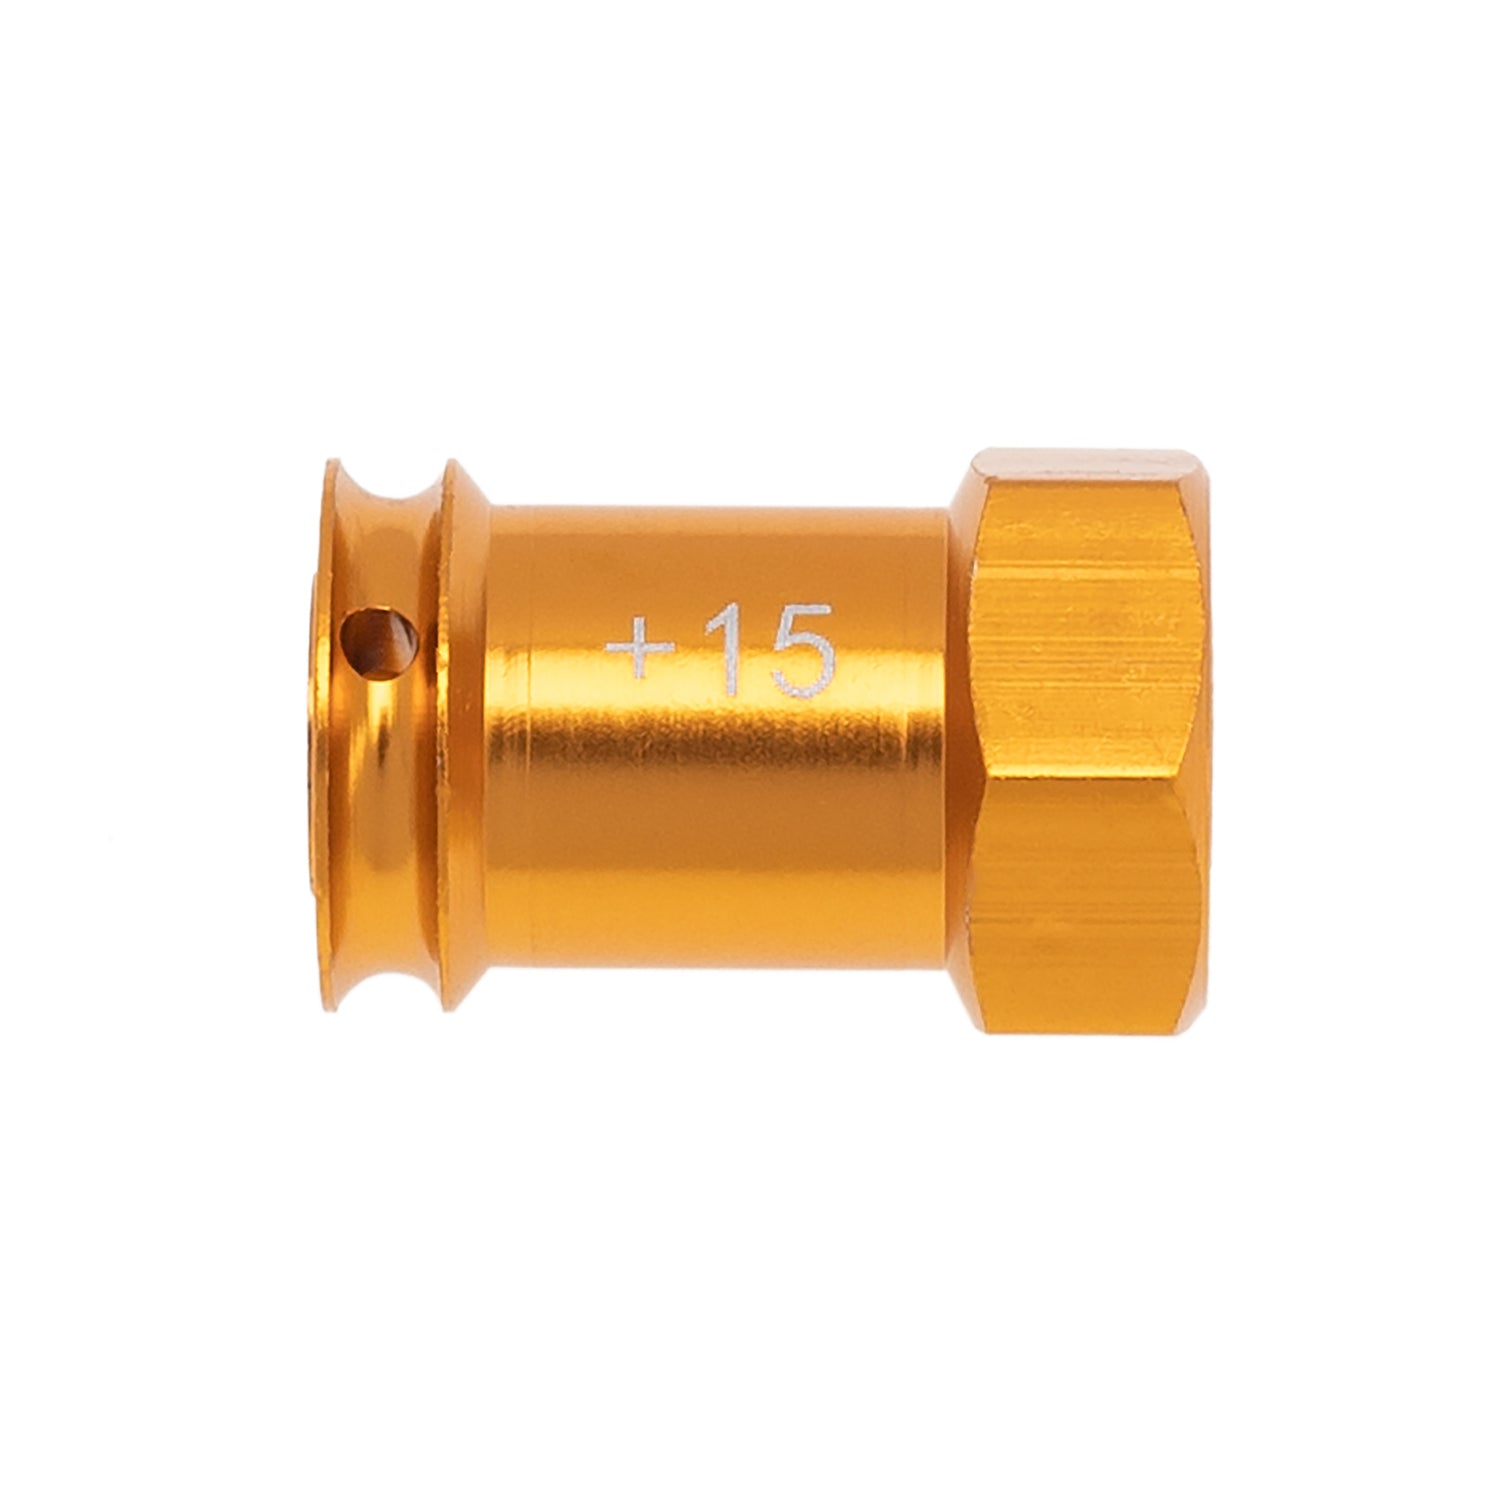  Wheek Hex Adaptor Combiner for slash Orange